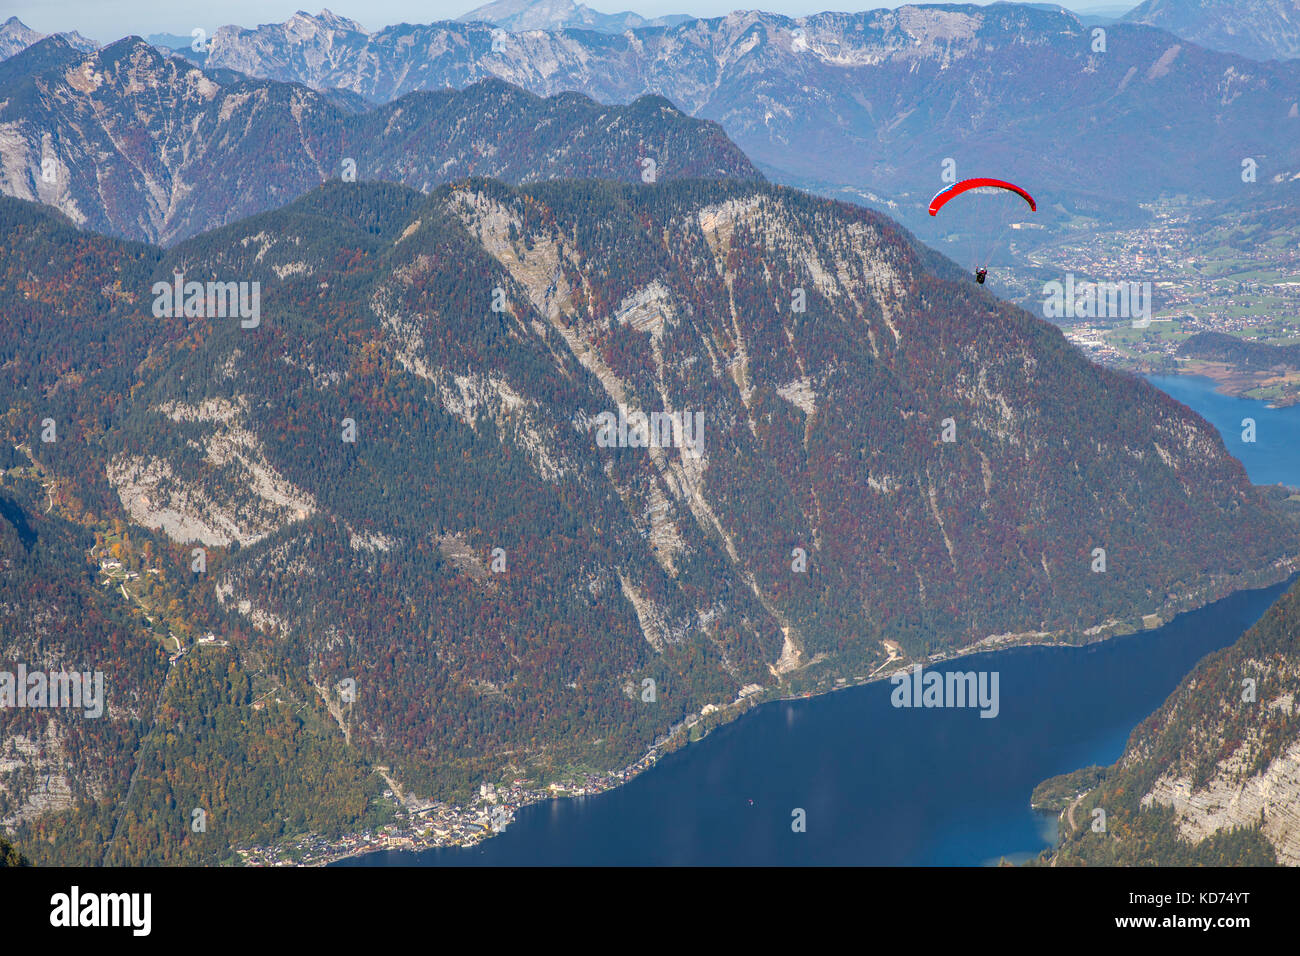 Dachstein mountain range, regione di Oberösterreich, Austria superiore, parte delle alpi, krippenstein area sommitale, parapendio sul lago Hallstatt, Foto Stock